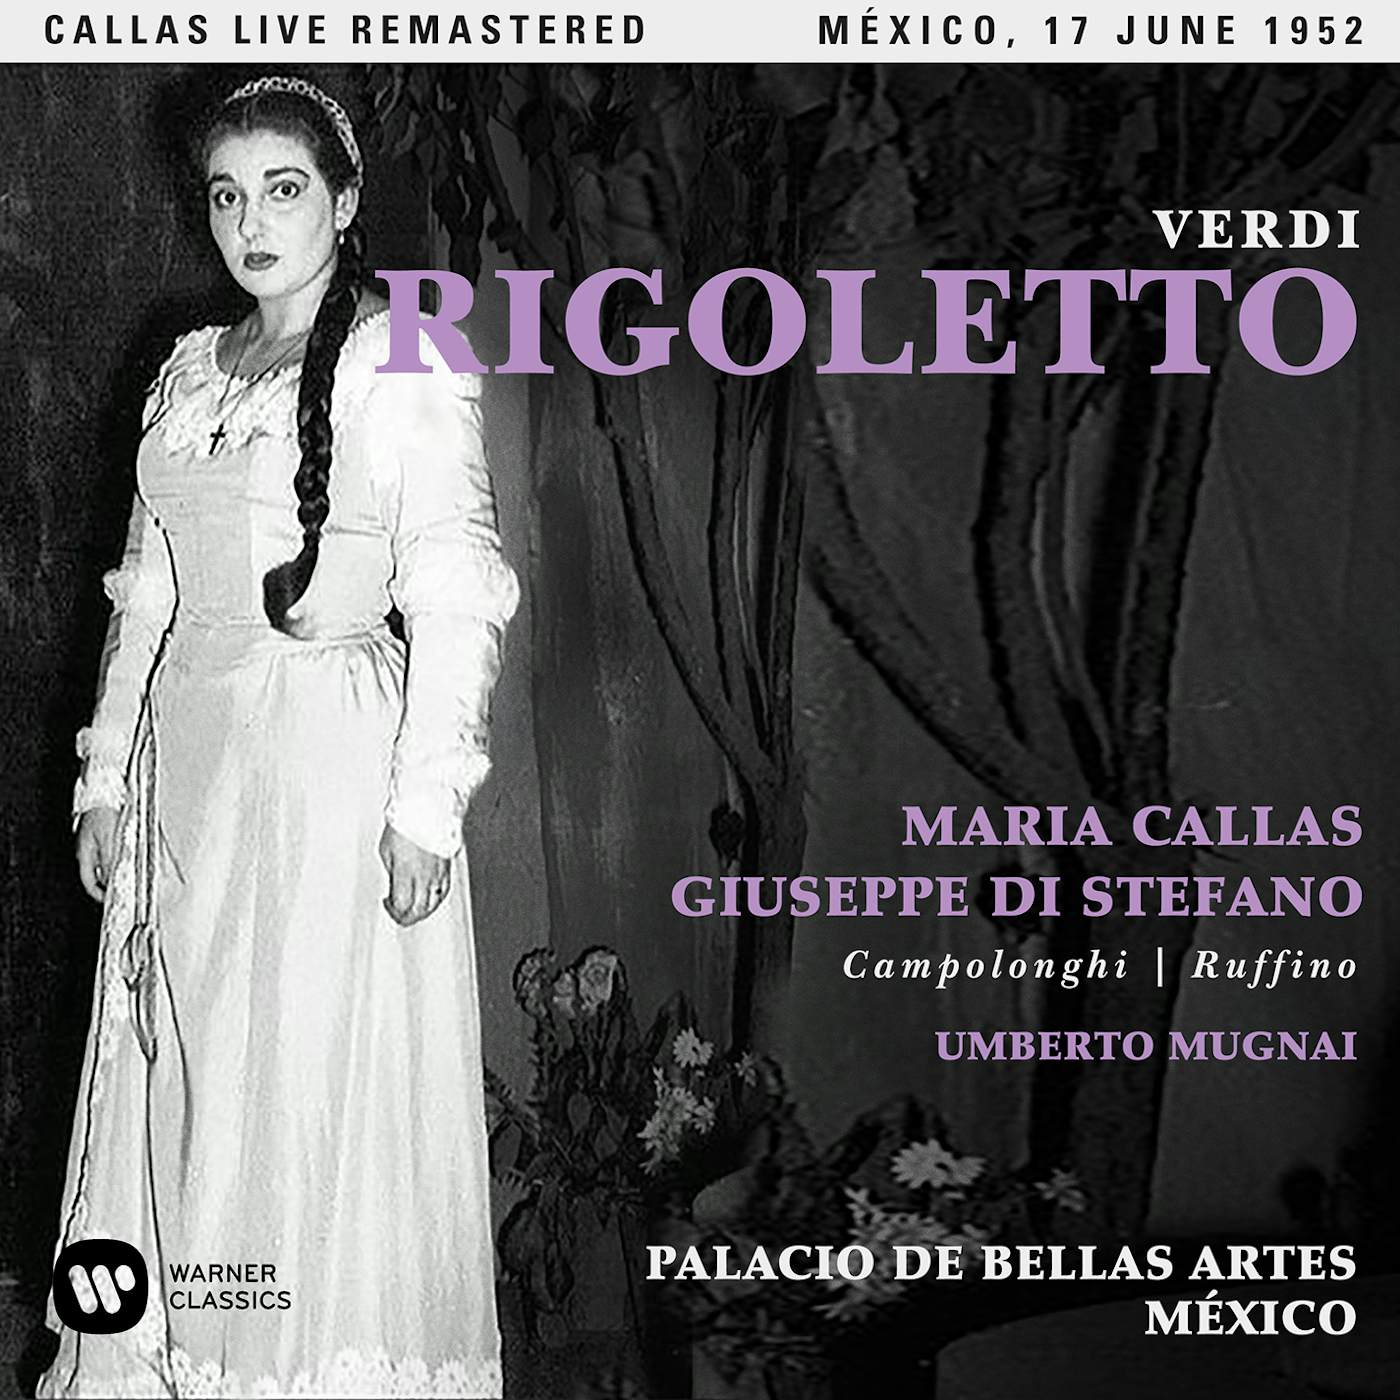 Maria Callas VERDI: RIGOLETTO (MEXICO 17/06/1952) CD